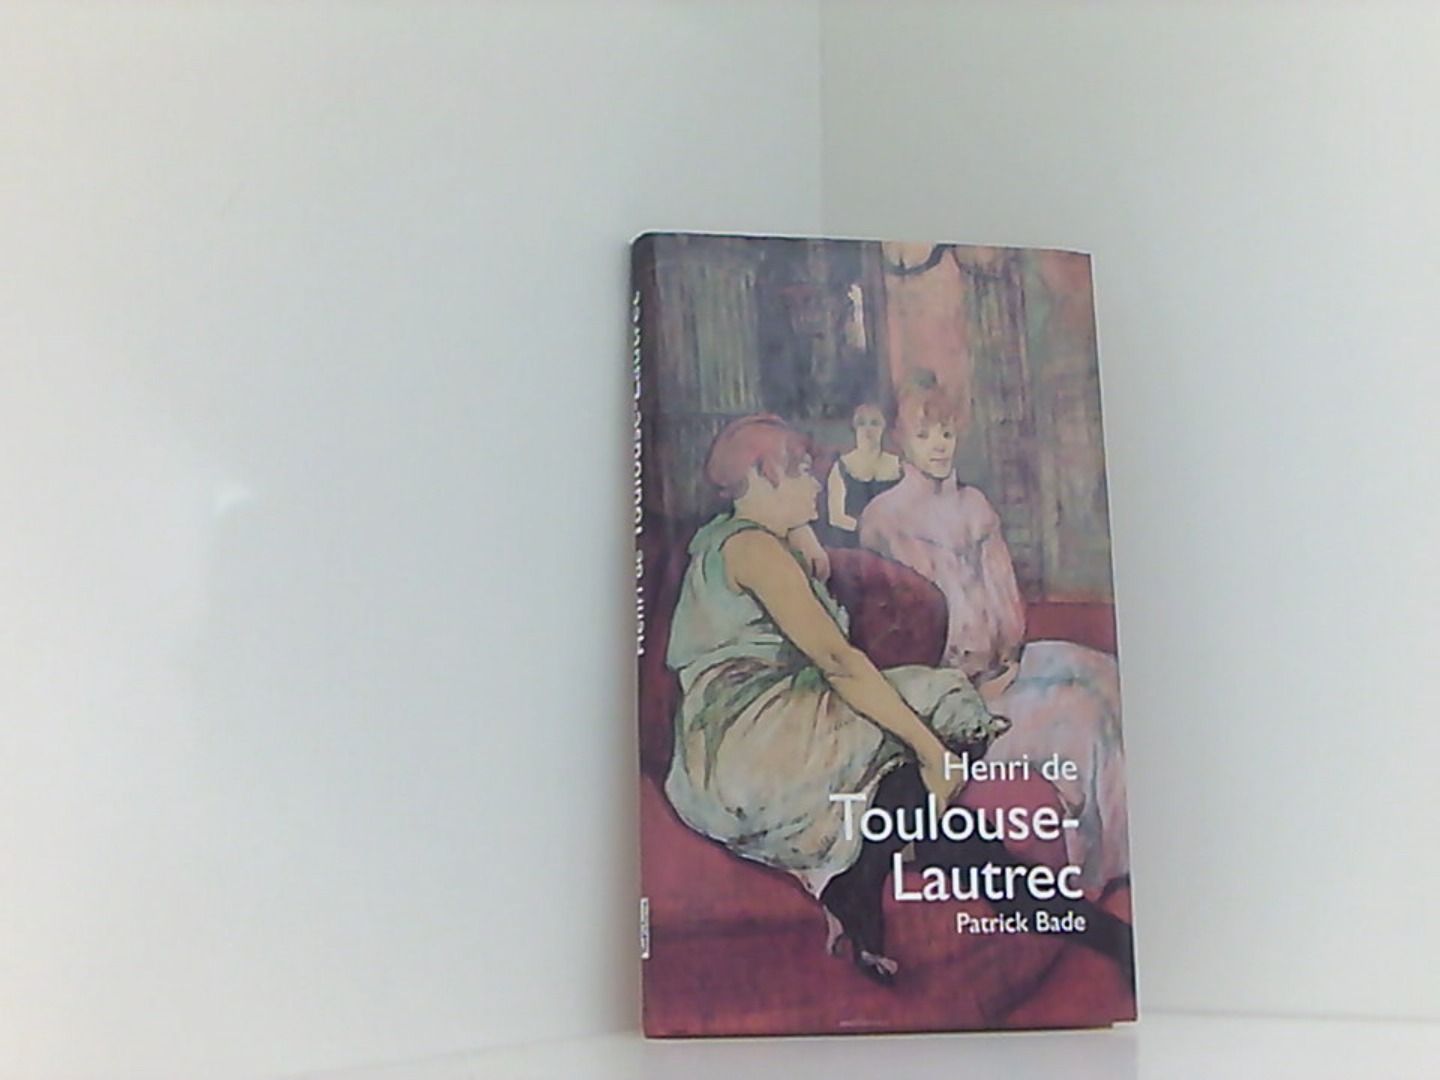 Henri de Toulouse-Lautrec - Toulouse-Lautrec Henri, de, Toulouse- Lautrec Henri de  und Henri-Marie- Toulouse-Lautrec